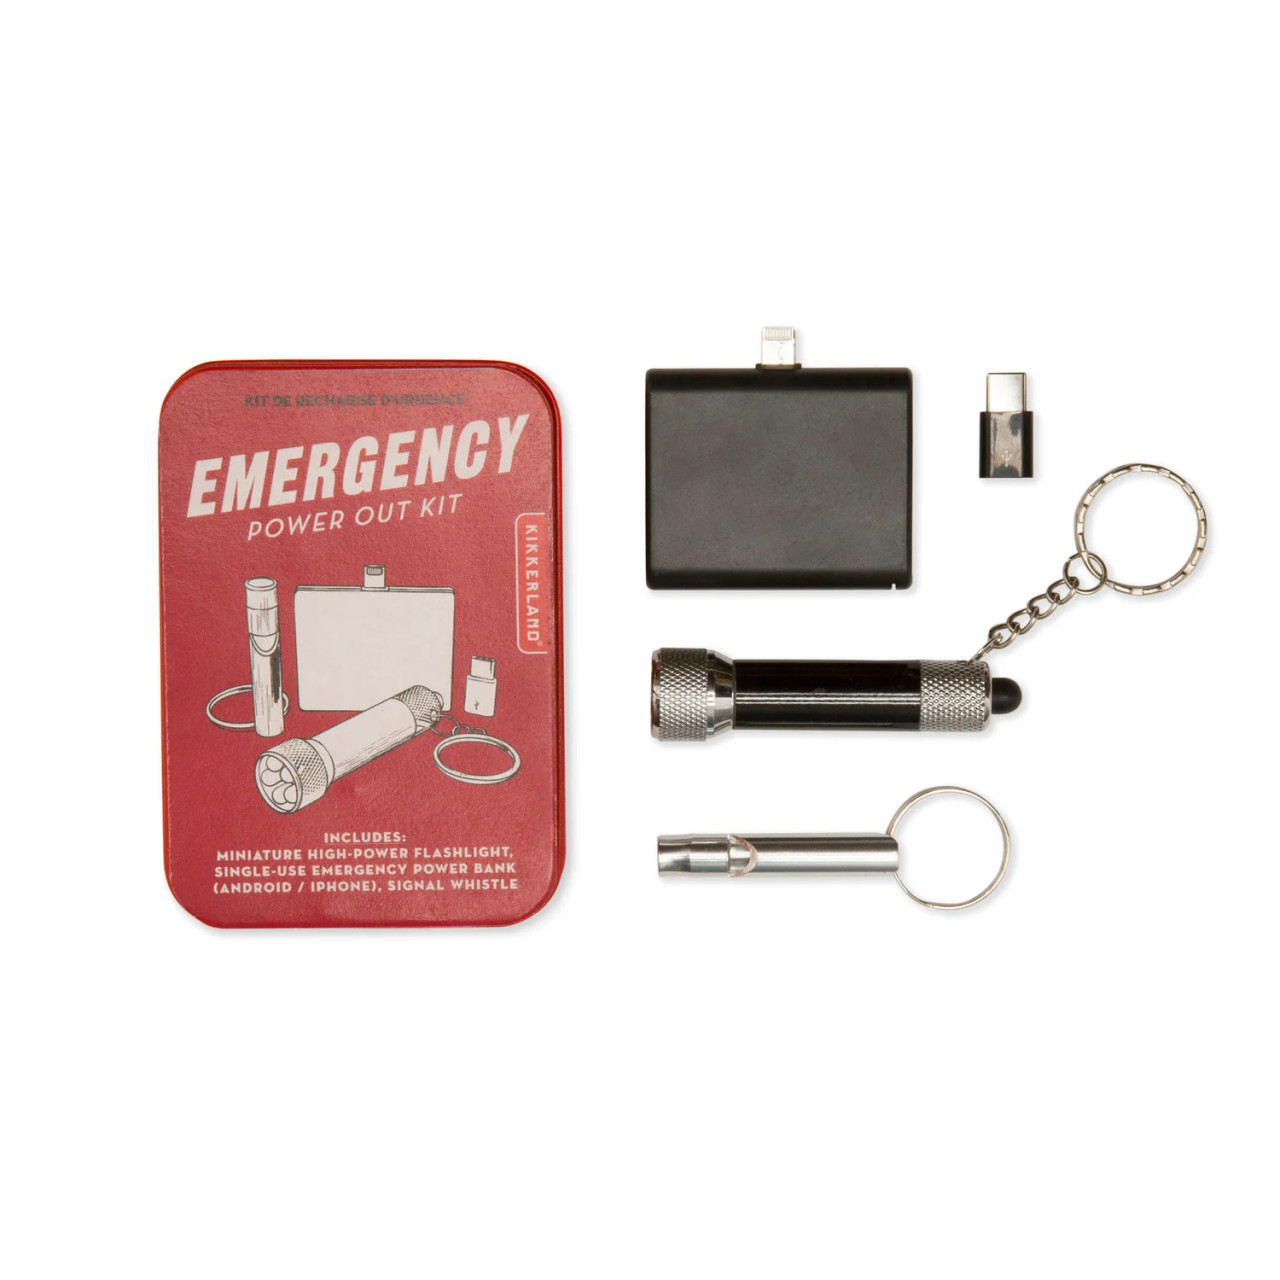 Emergency Power Outage Kit (KIK CD537) - Sue Patrick